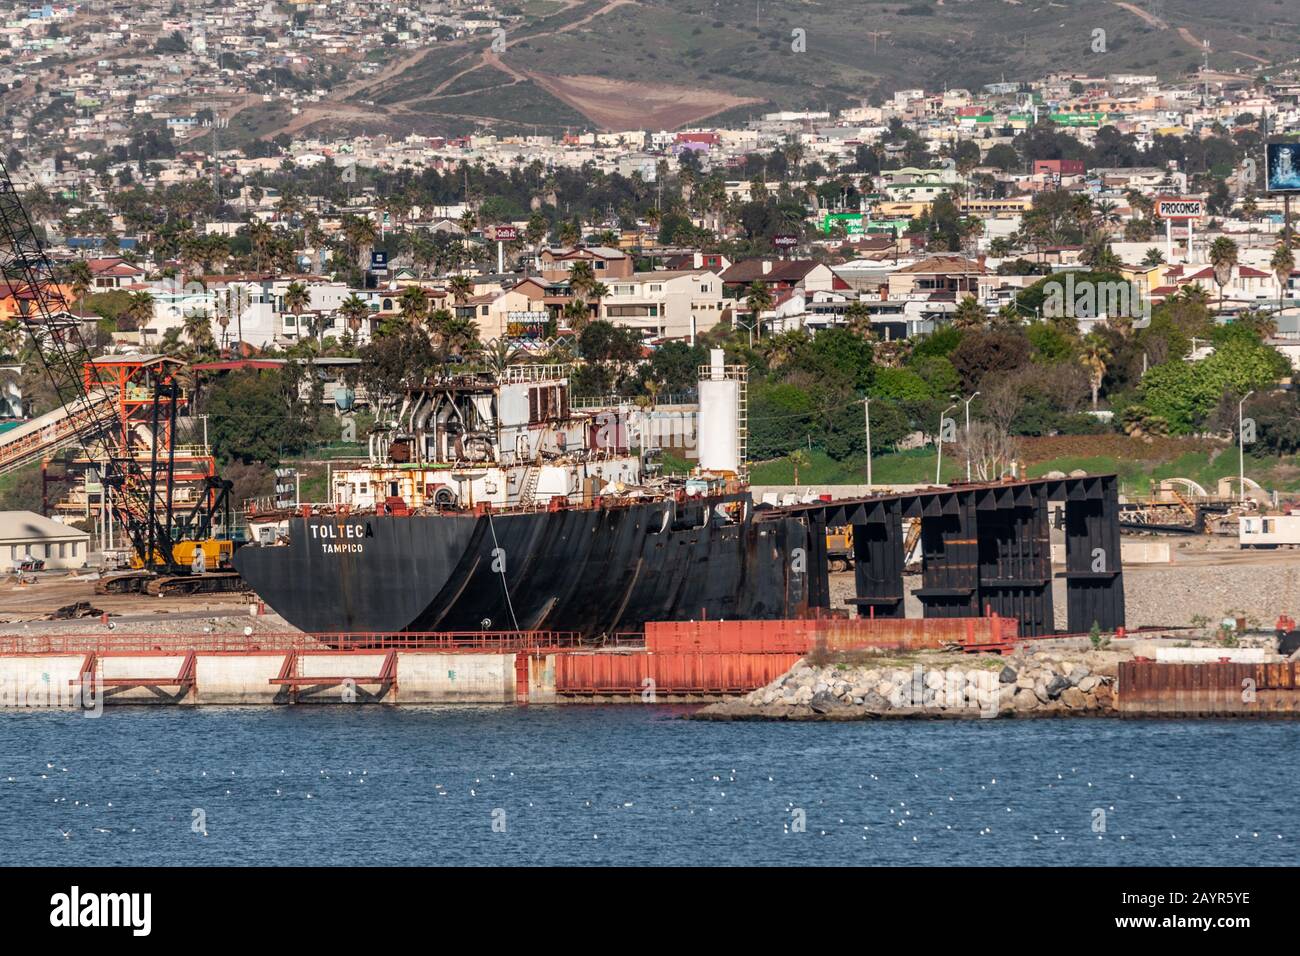 Ensenada, Mexique - 17 janvier 2012: Barge noire Toltec dans un quai sec dans le port. Soutenu par le paysage urbain blanc sur la pente de la montagne. Bleu baie d'eau à l'avant. Banque D'Images